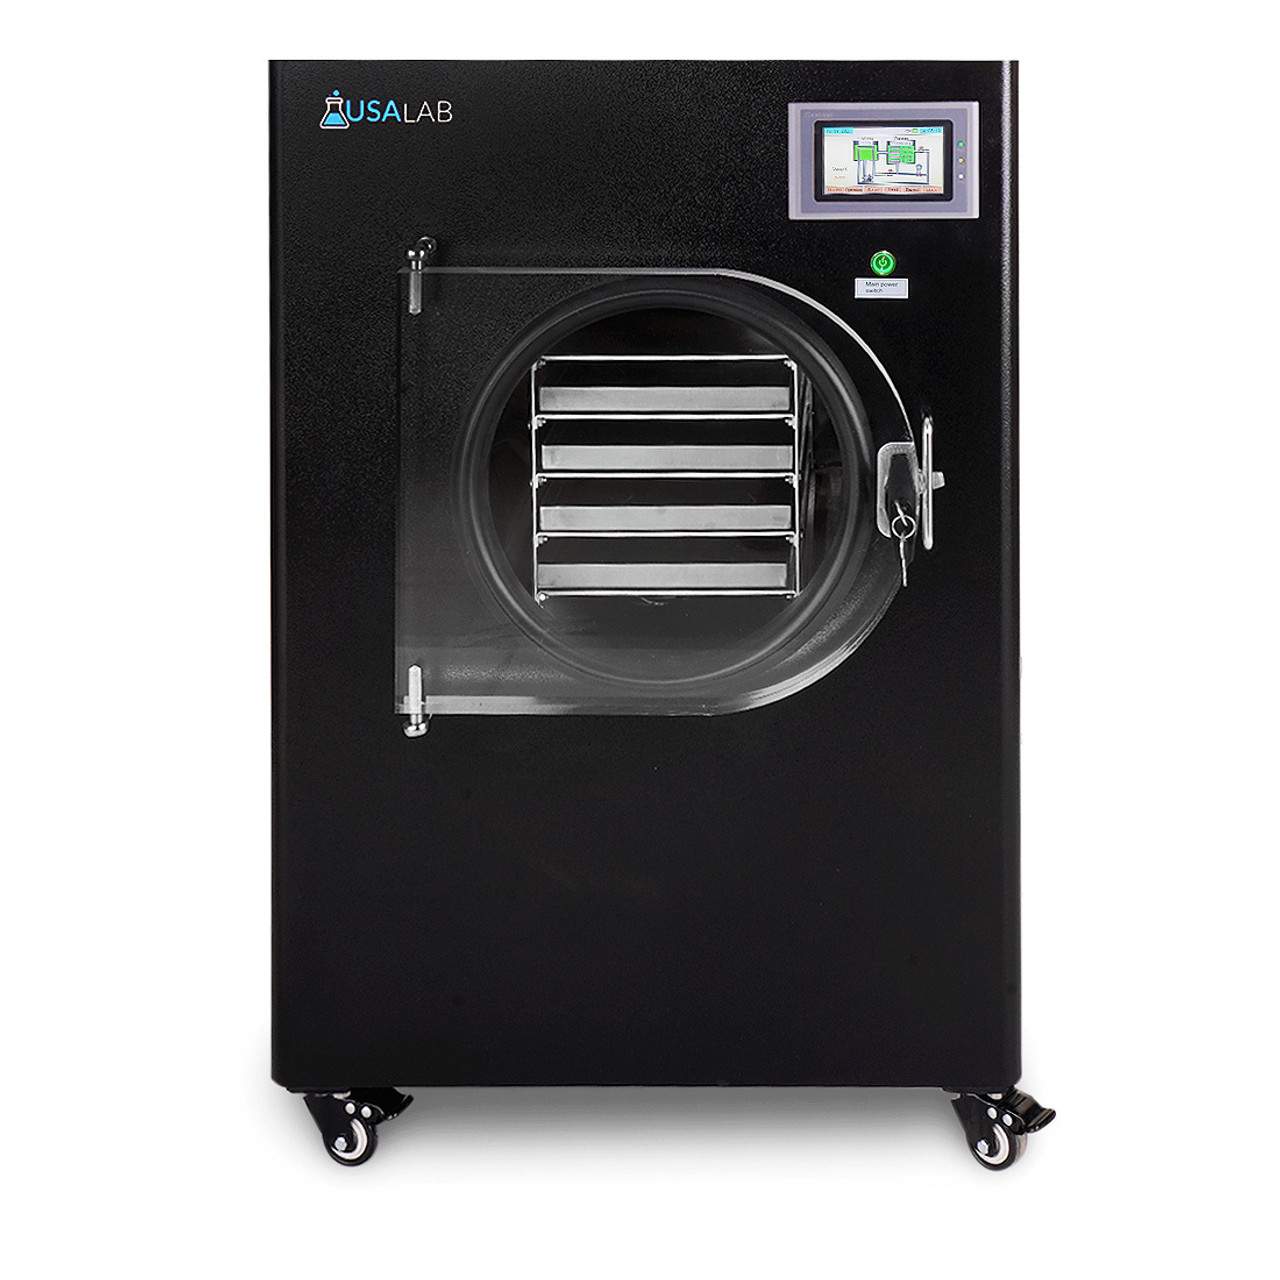 SP Scientific Announces the AdVantage Pro - a New Laboratory Freeze Dryer  that Combines Development and Pilot Scale Capabilities in a Convenient  Bench Top Unit.